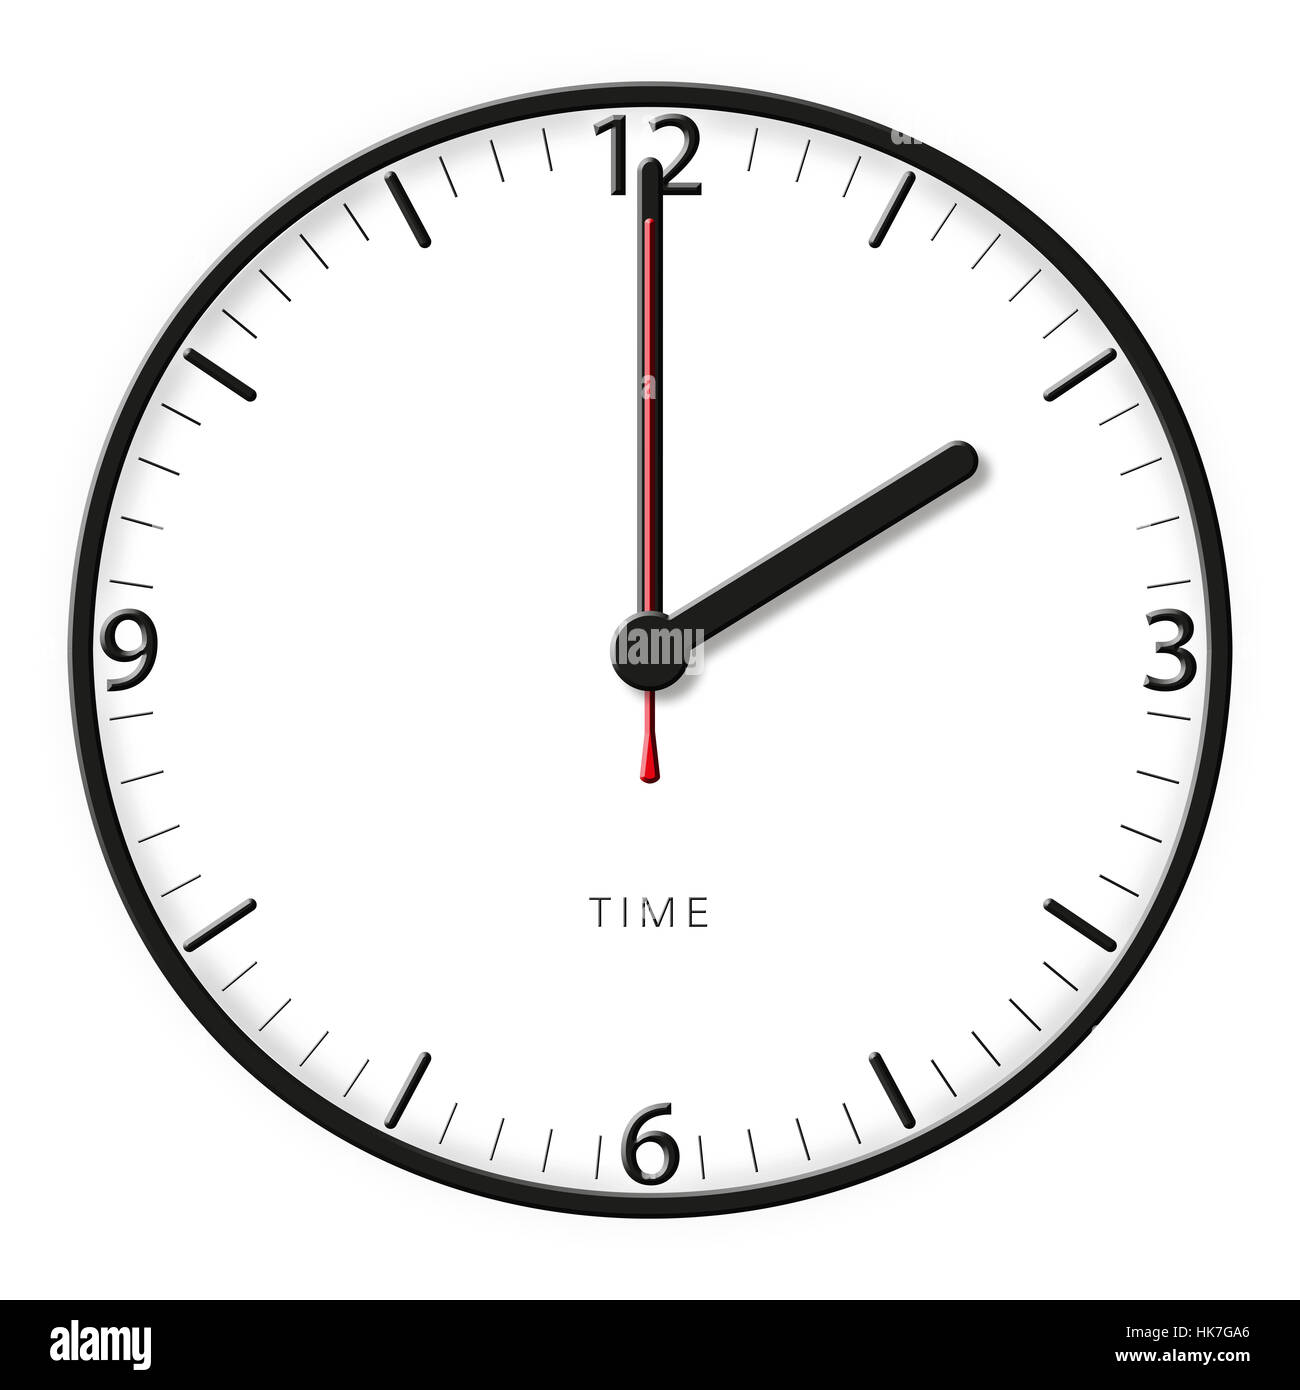 Uhr, Datum, Uhrzeit, Zeitanzeige, Sekunden, Minuten, Stunden, Stunde, Minute  Stockfotografie - Alamy